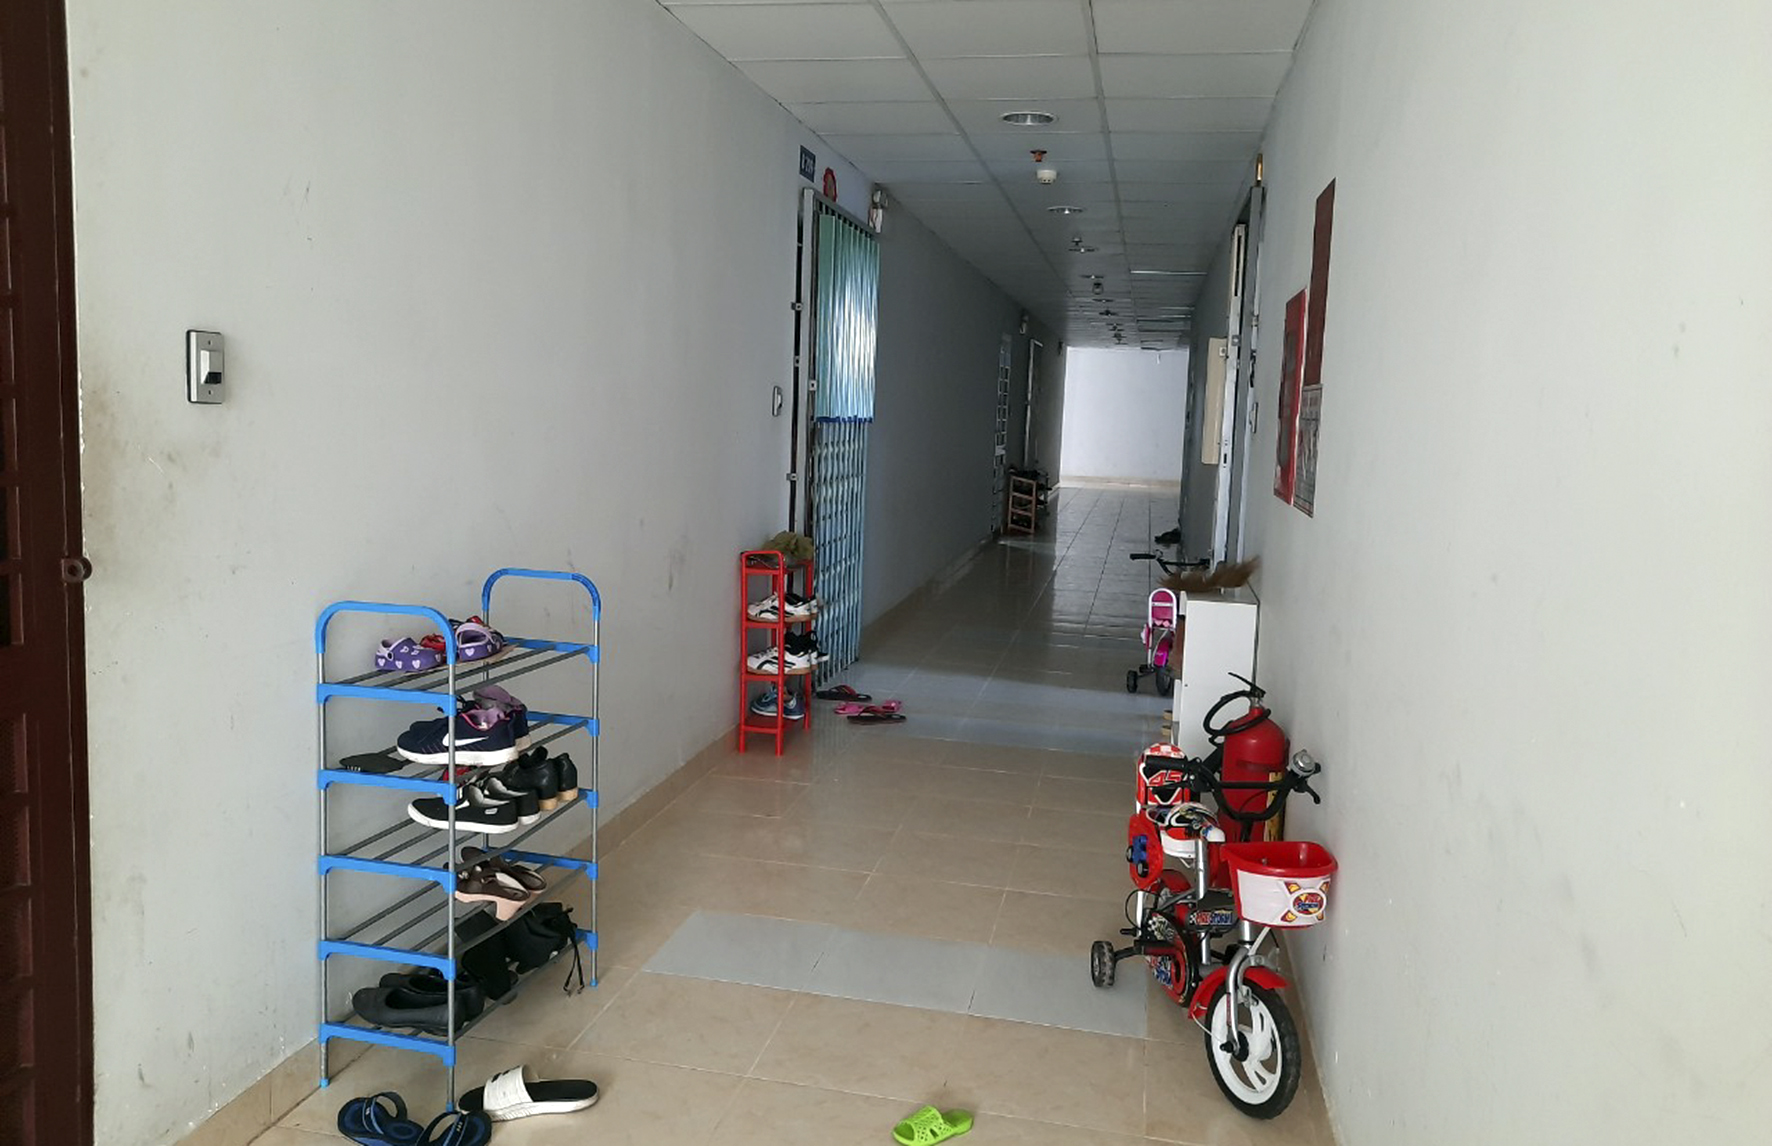 Dãy hành lang tầng 2, Khu nhà ở xã hội Chí Linh A không có trẻ em ra vui đùa như trước đây.